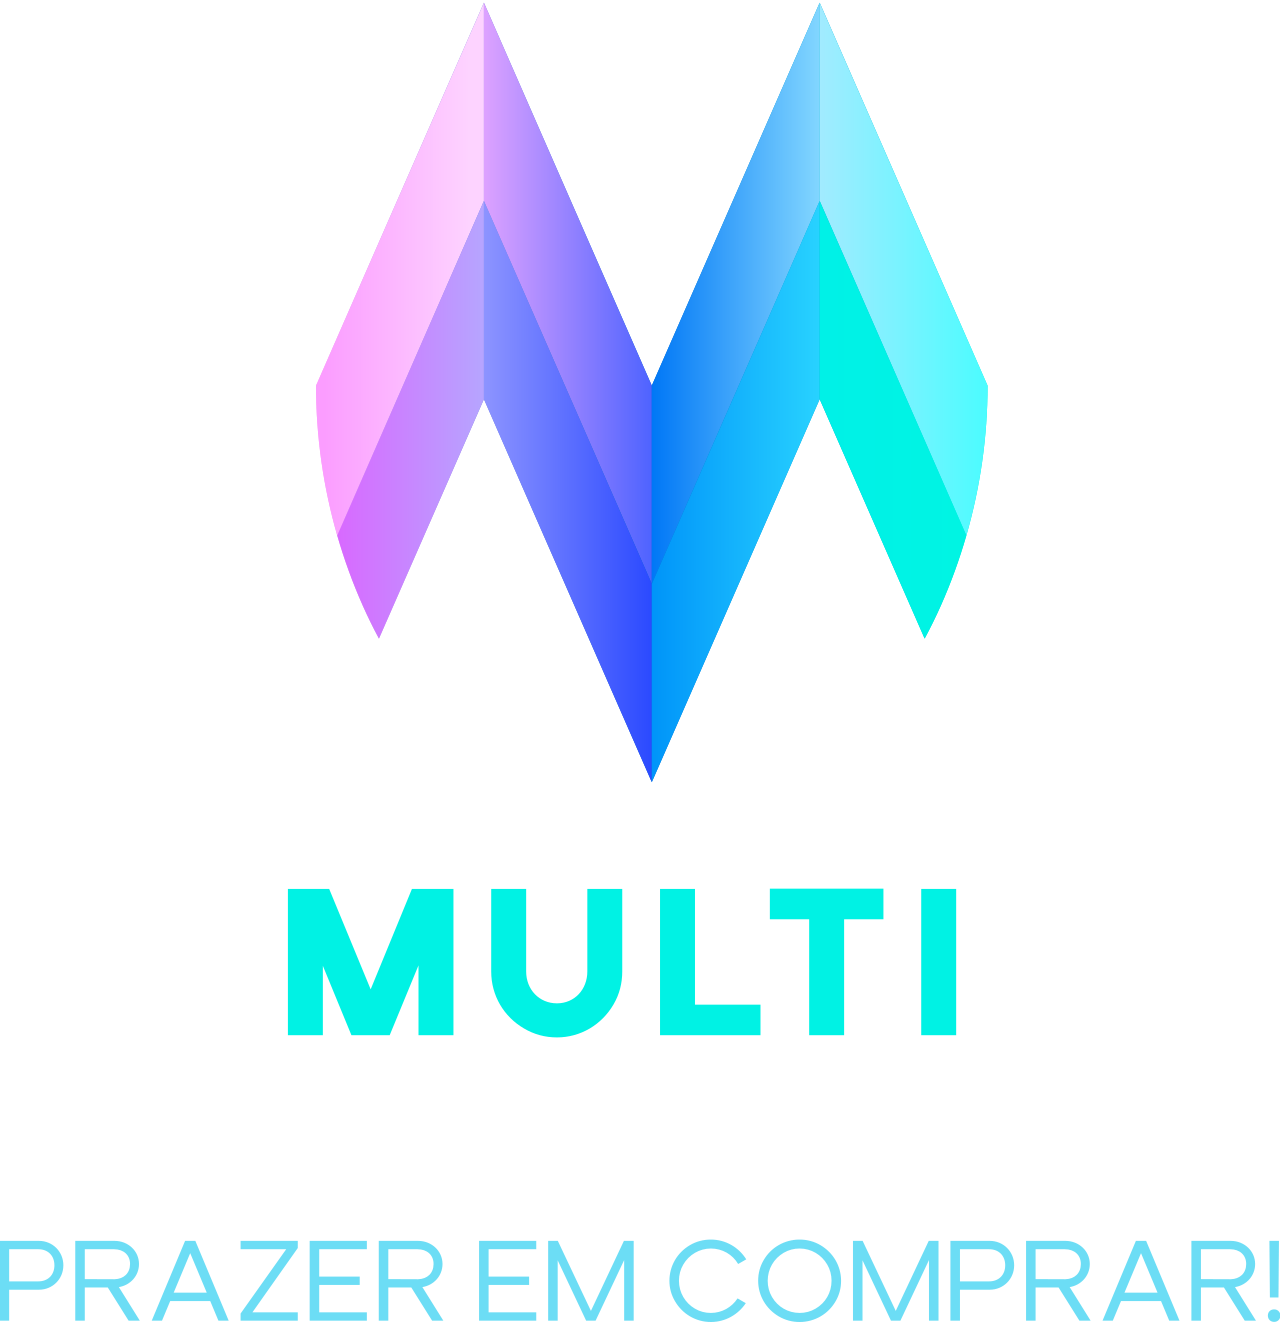 Multi 's logo